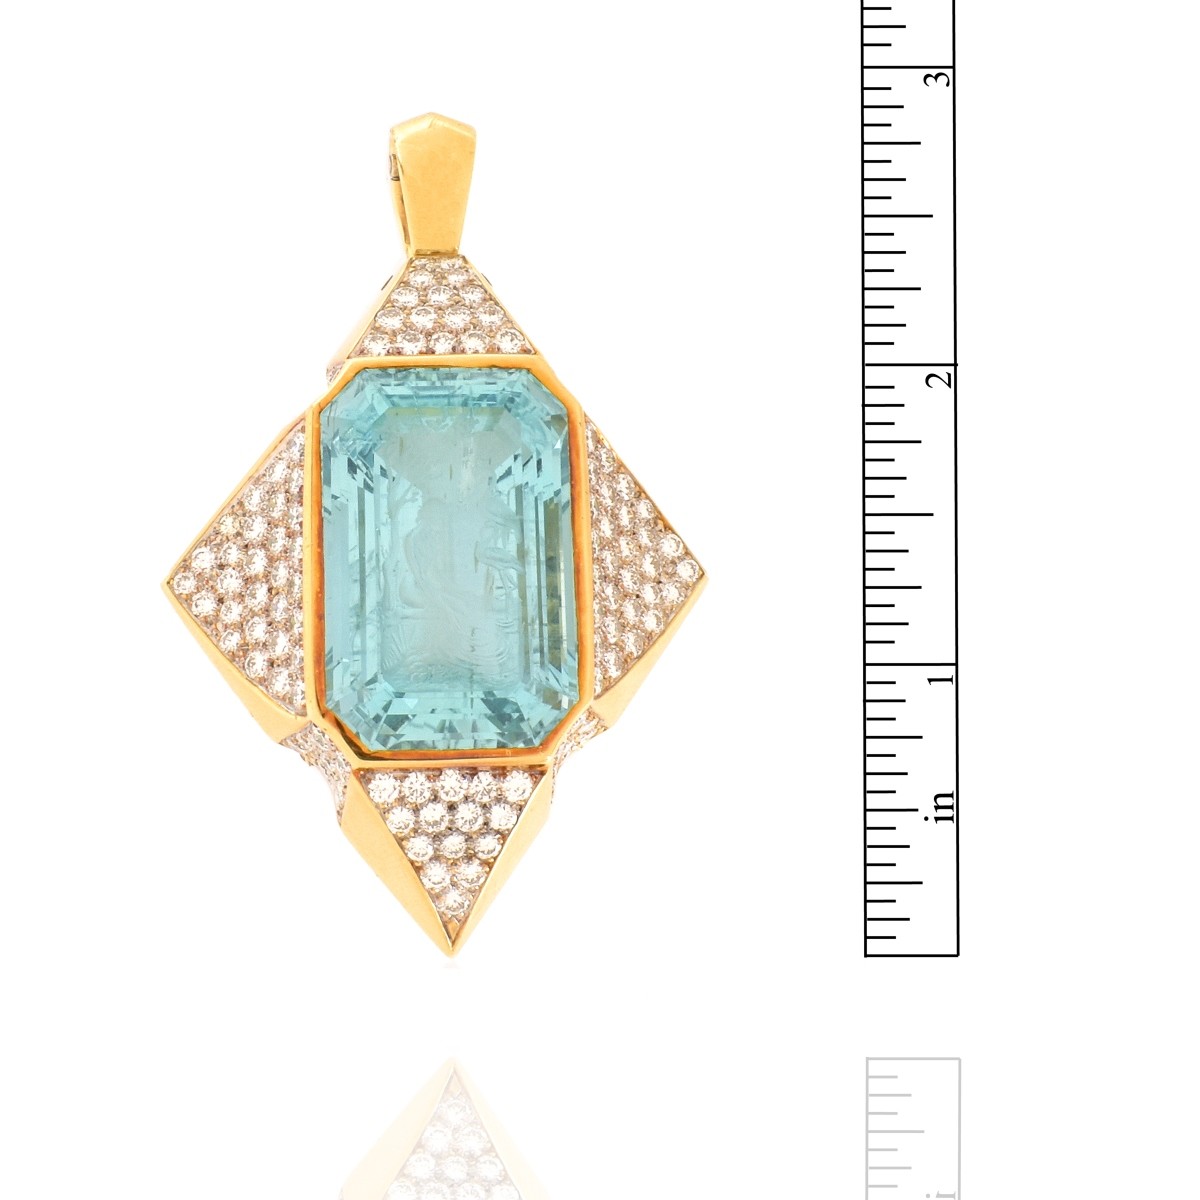 Aquamarine, Diamond and 18K Pendant / Brooch